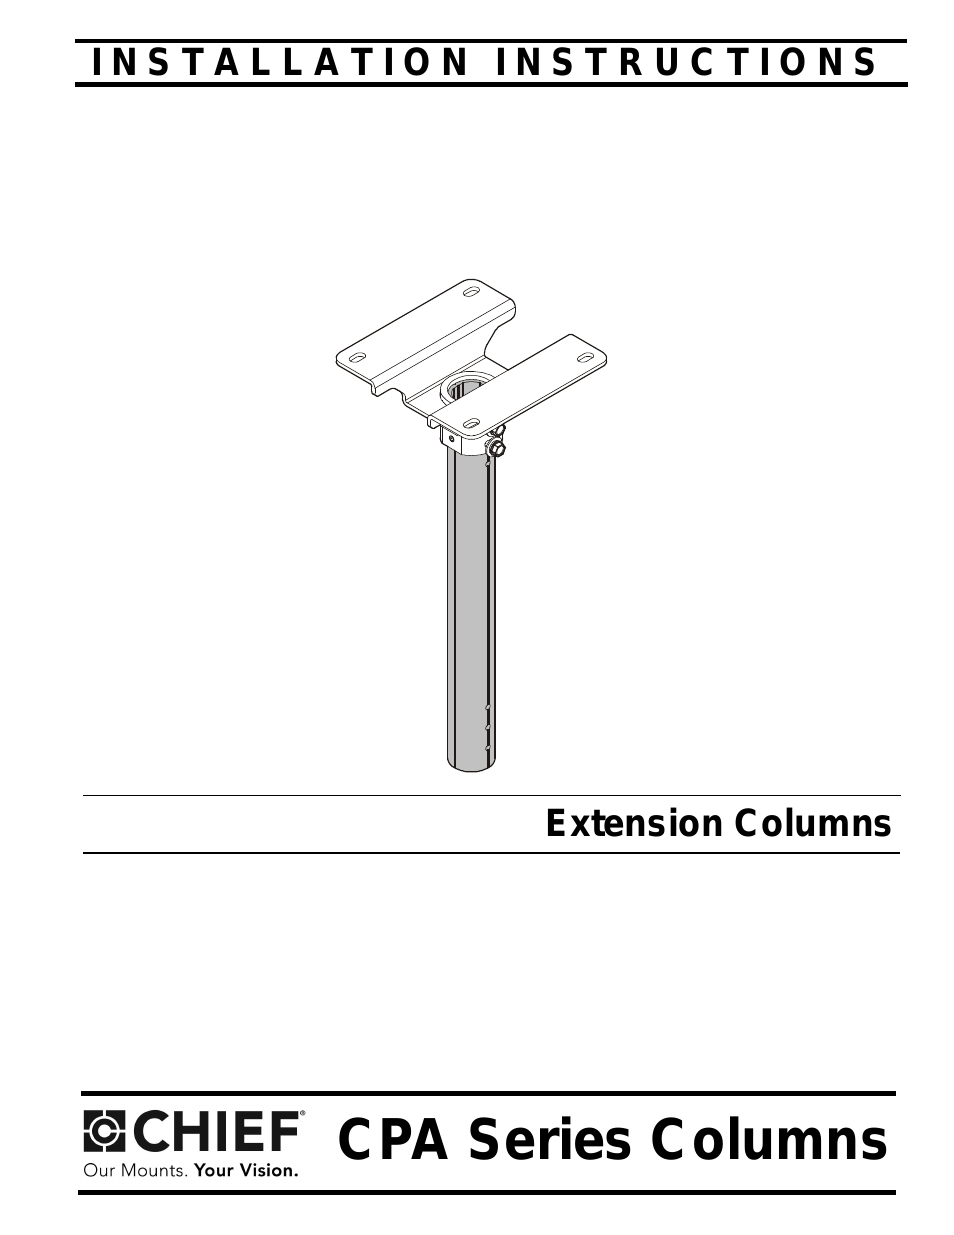 CPA Series Columns